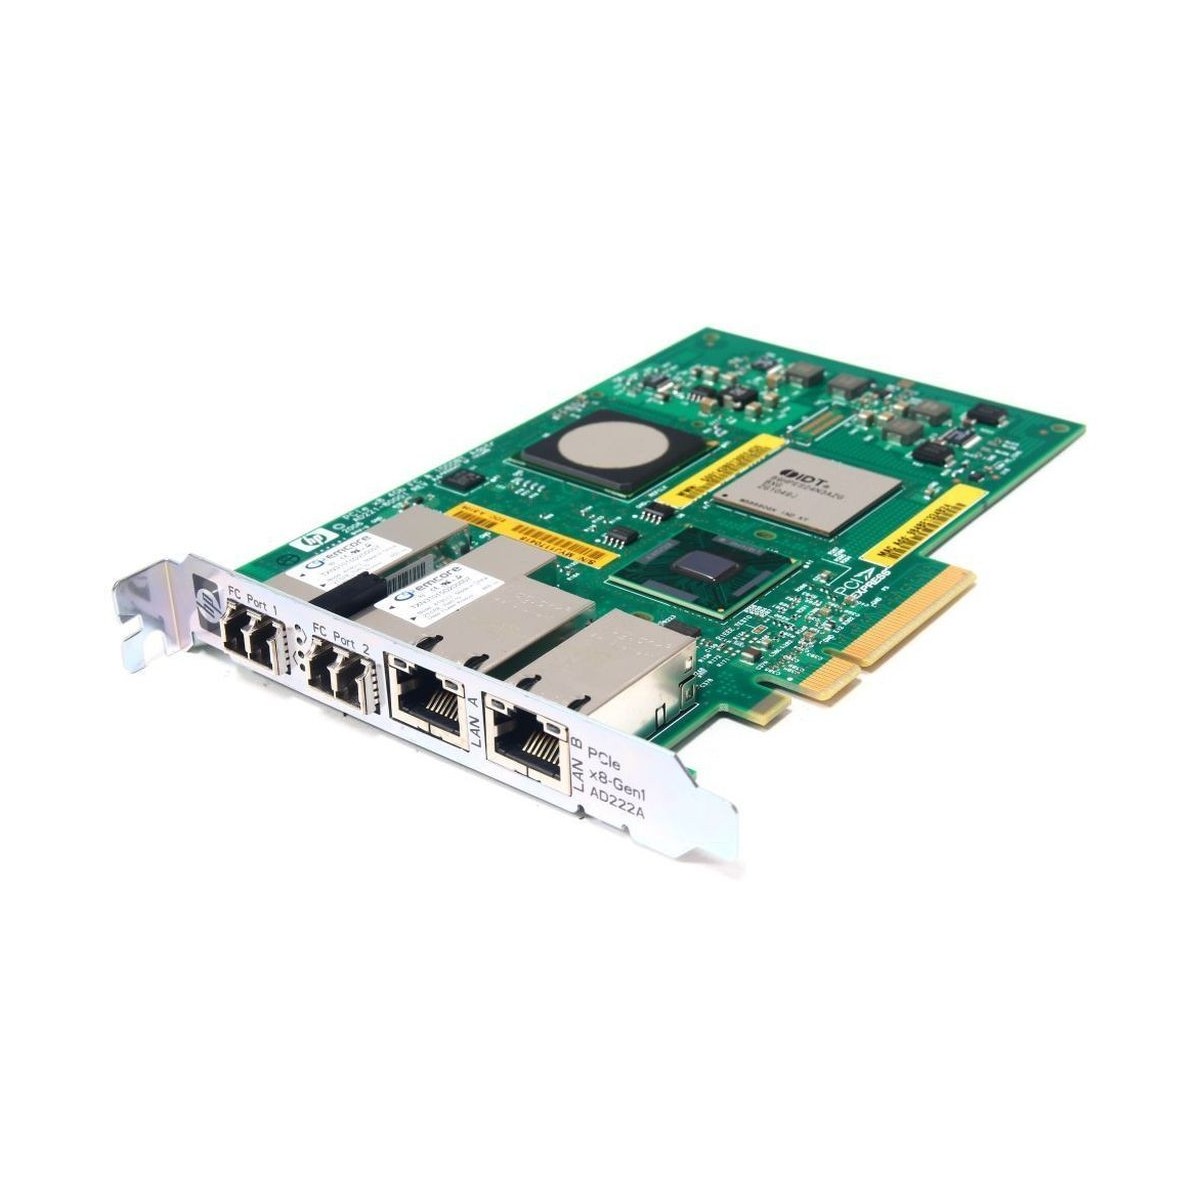 KARTA COMBO HP PCIex8 AD222A 2x4GB FC 2xLAN 1GB